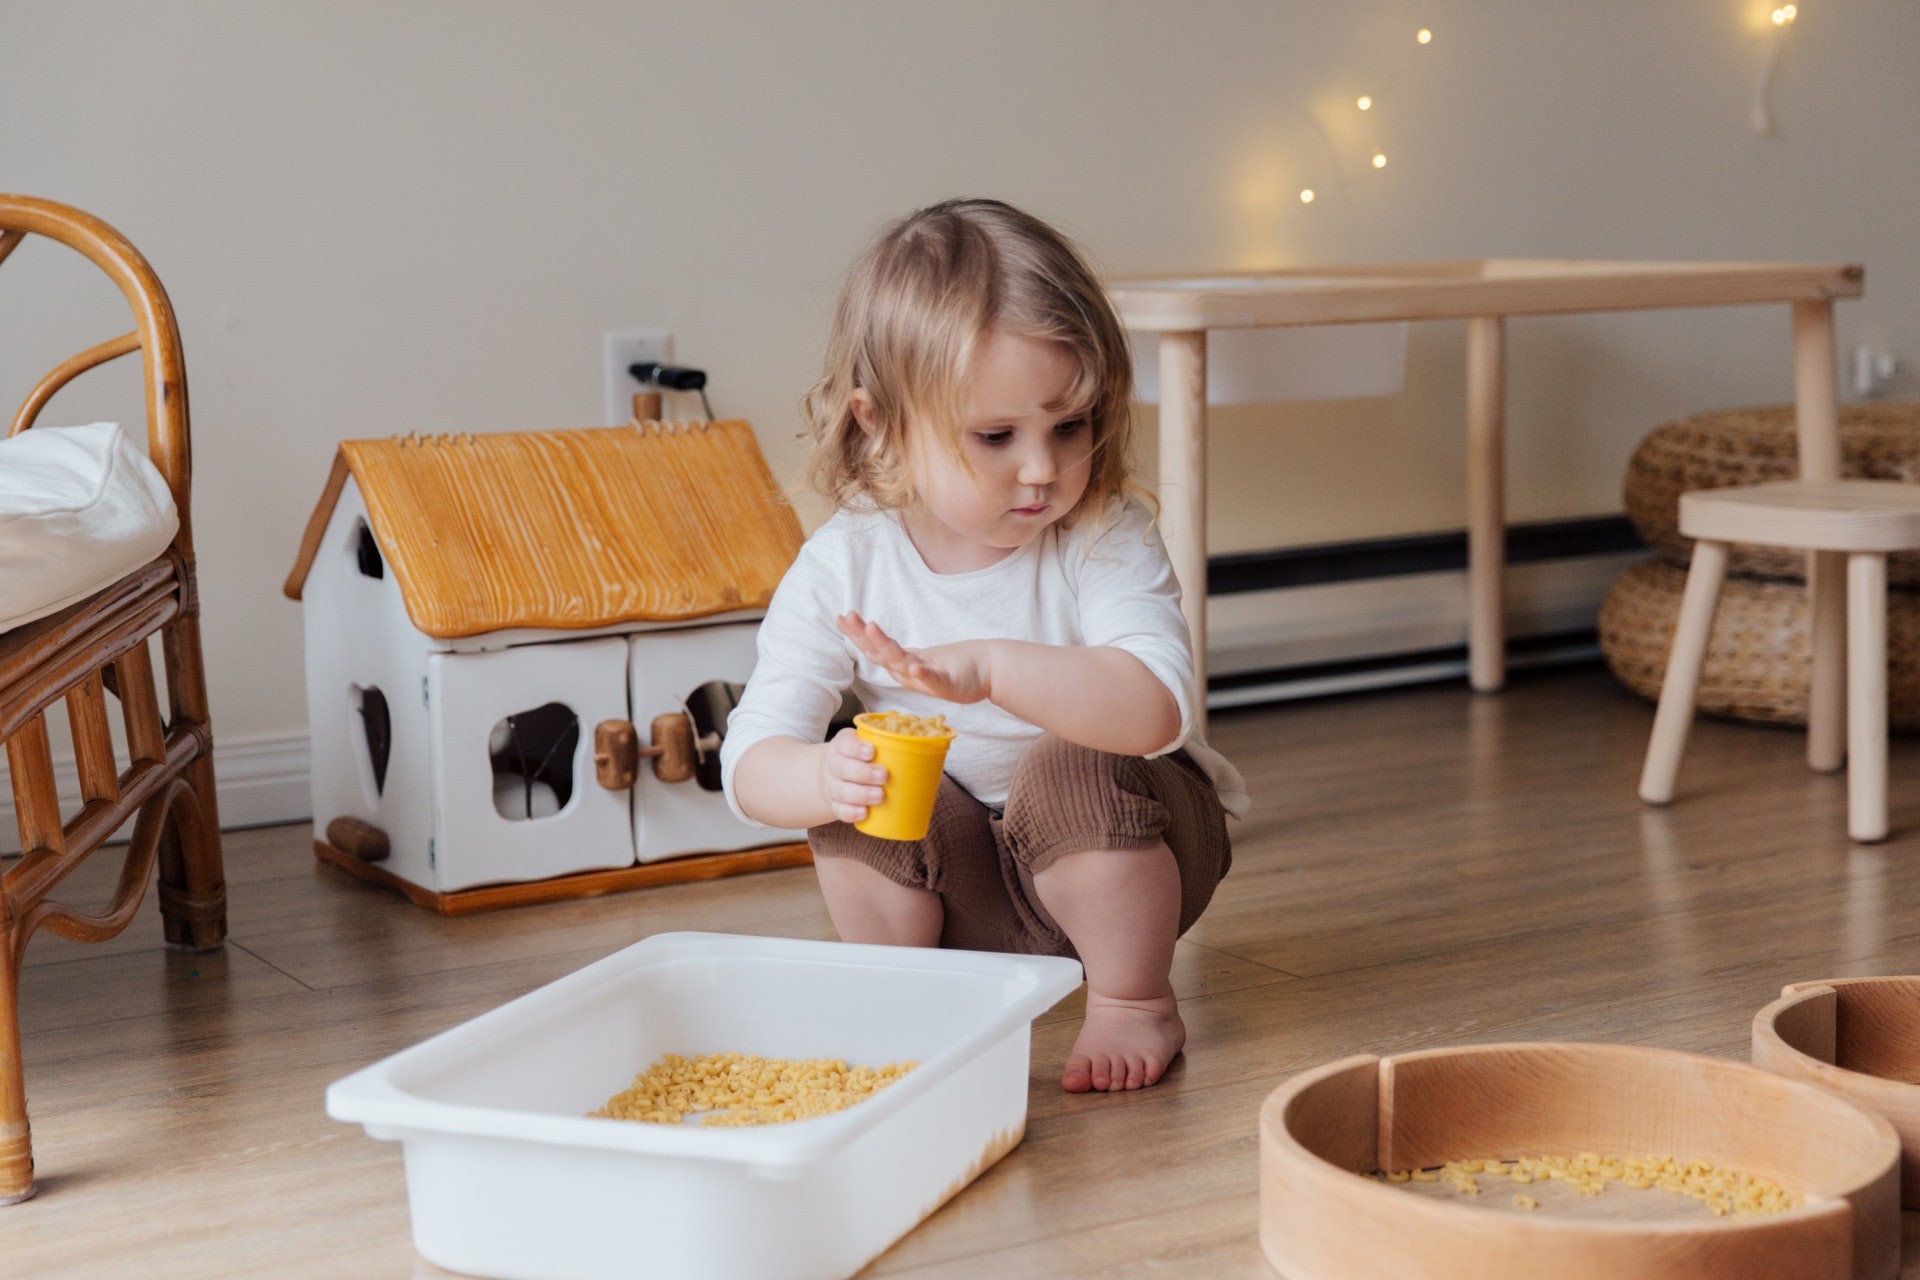 Brincar de casinha ajuda a criança a desenvolver habilidades (Foto: Foto de Tatiana Syrikova no Pexels)